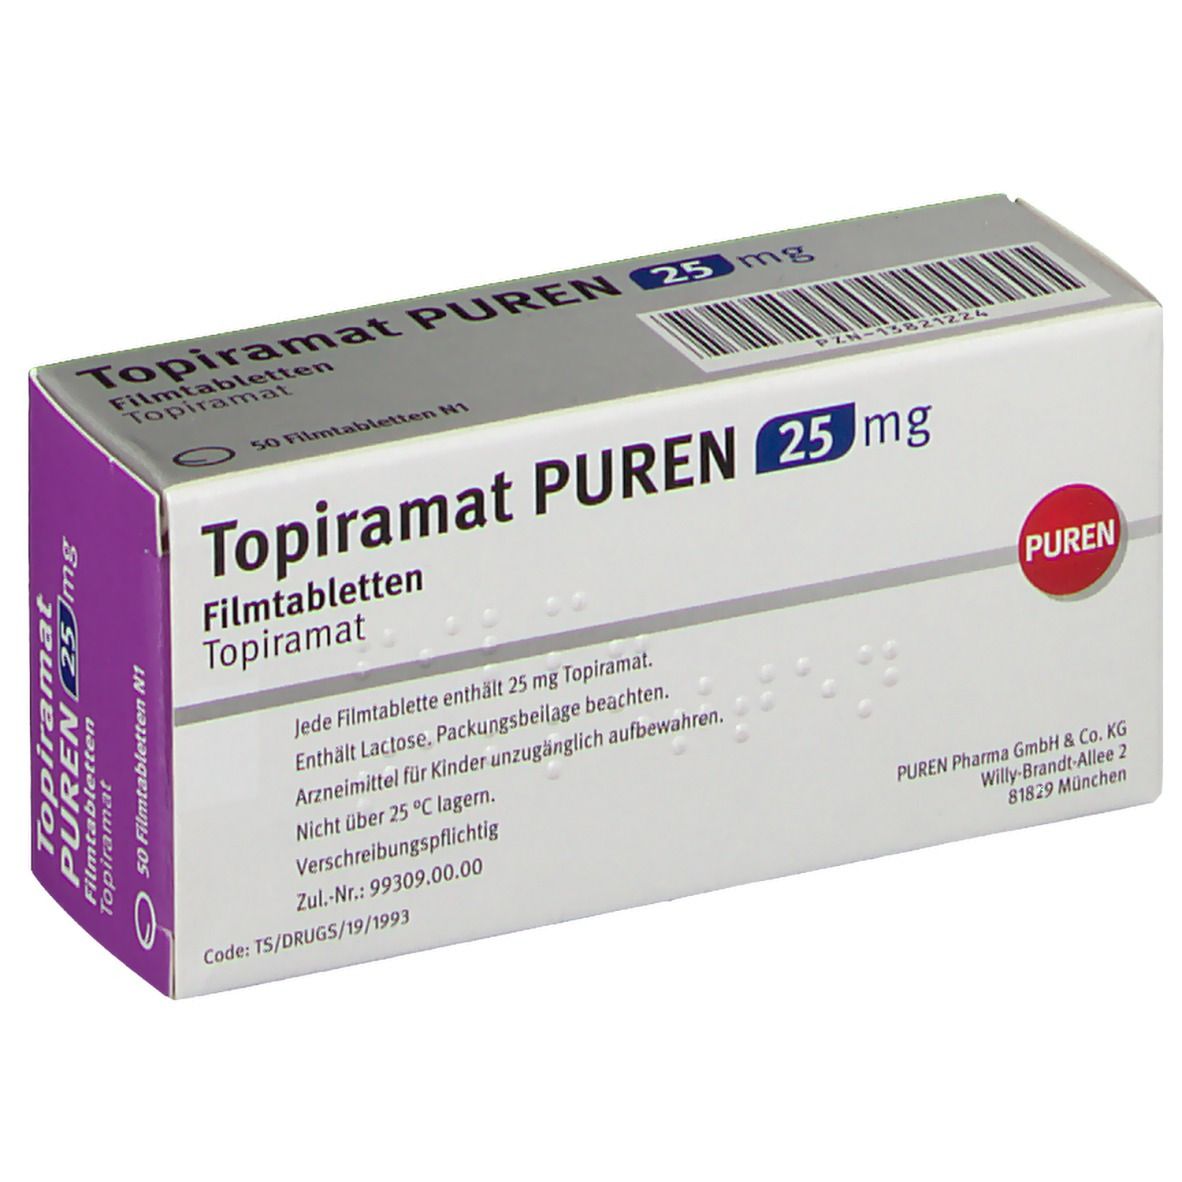 Topiramat PUREN 25 mg